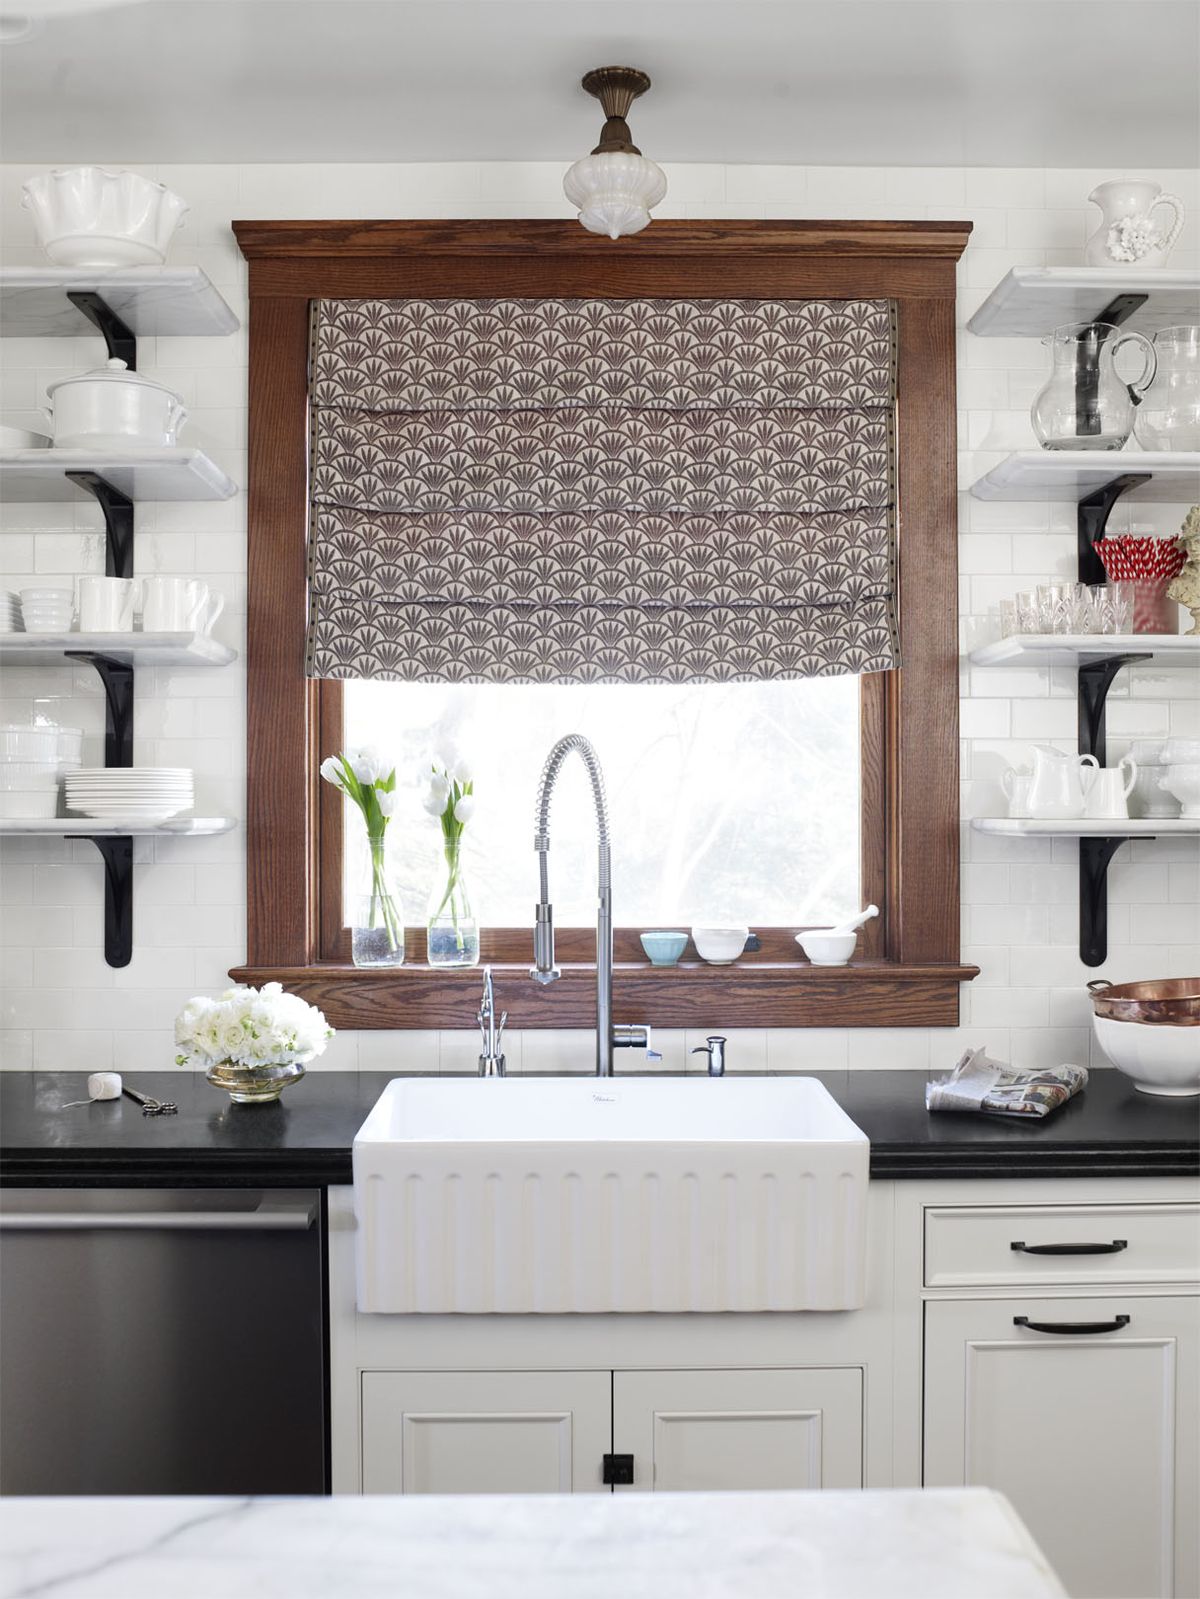 kitchen sink below brown window with pattern curtains